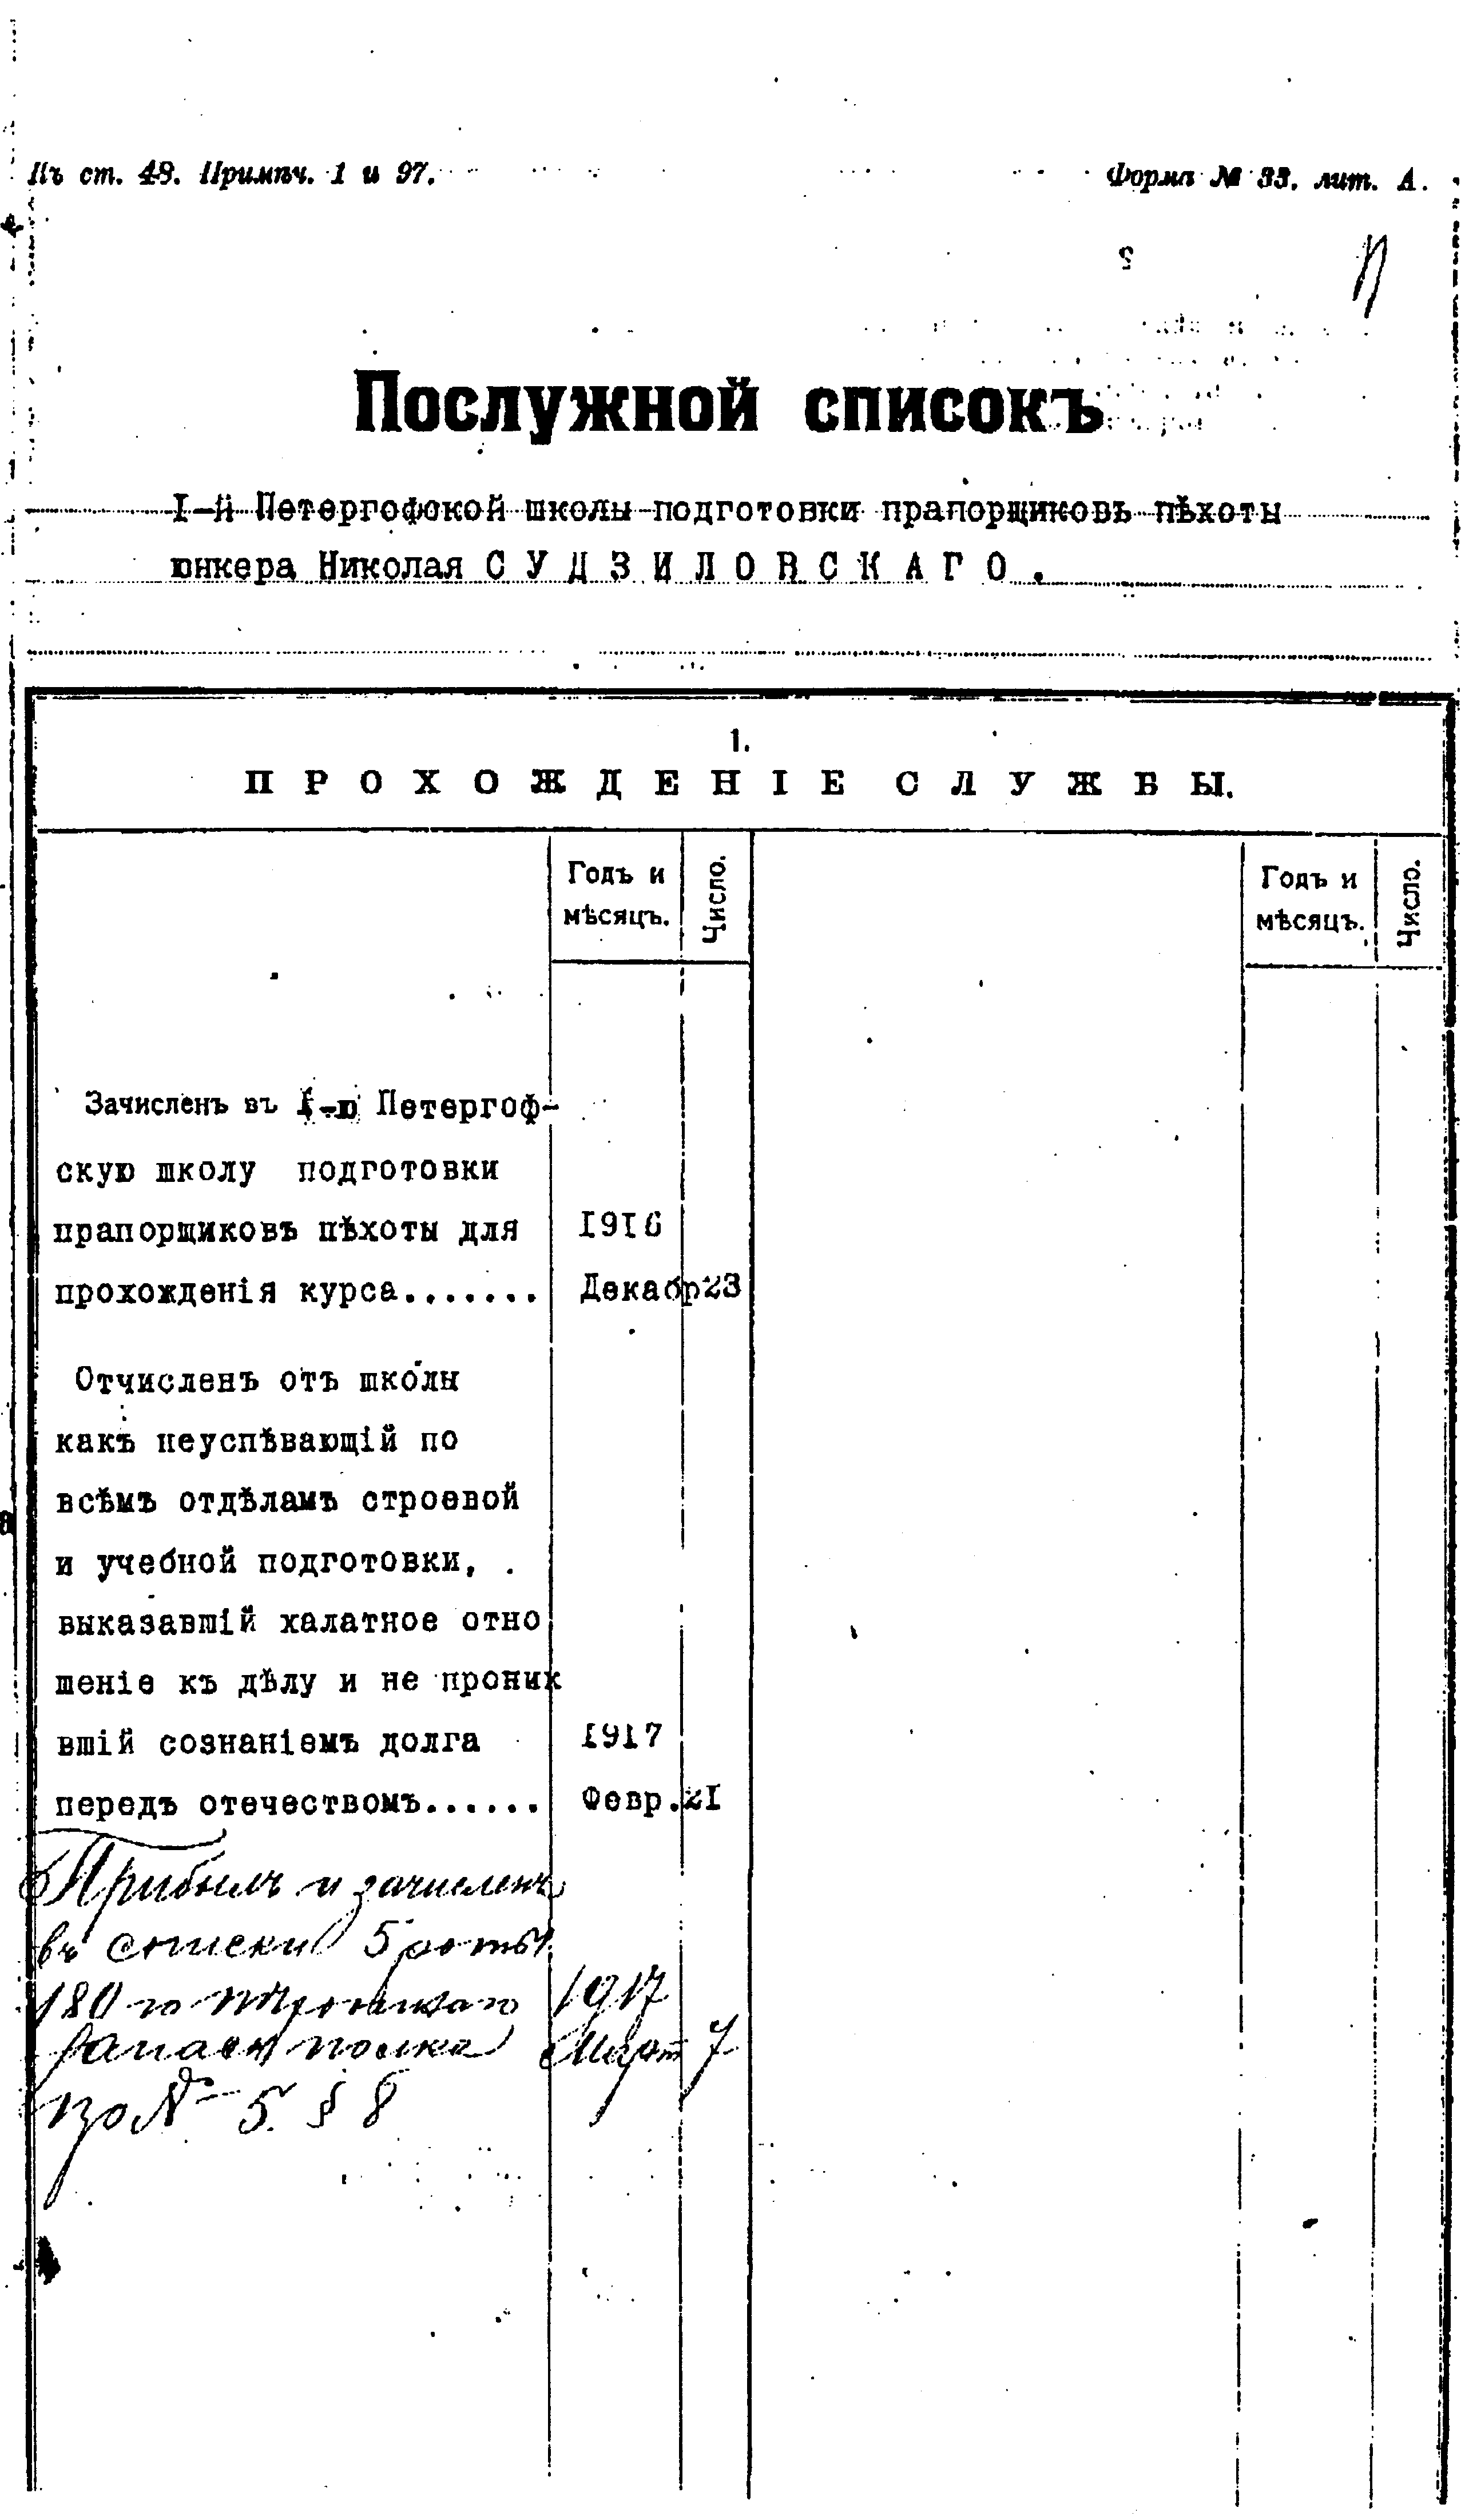 Документы к биографии Н.В. Суржанского. Личное дело 1917 года